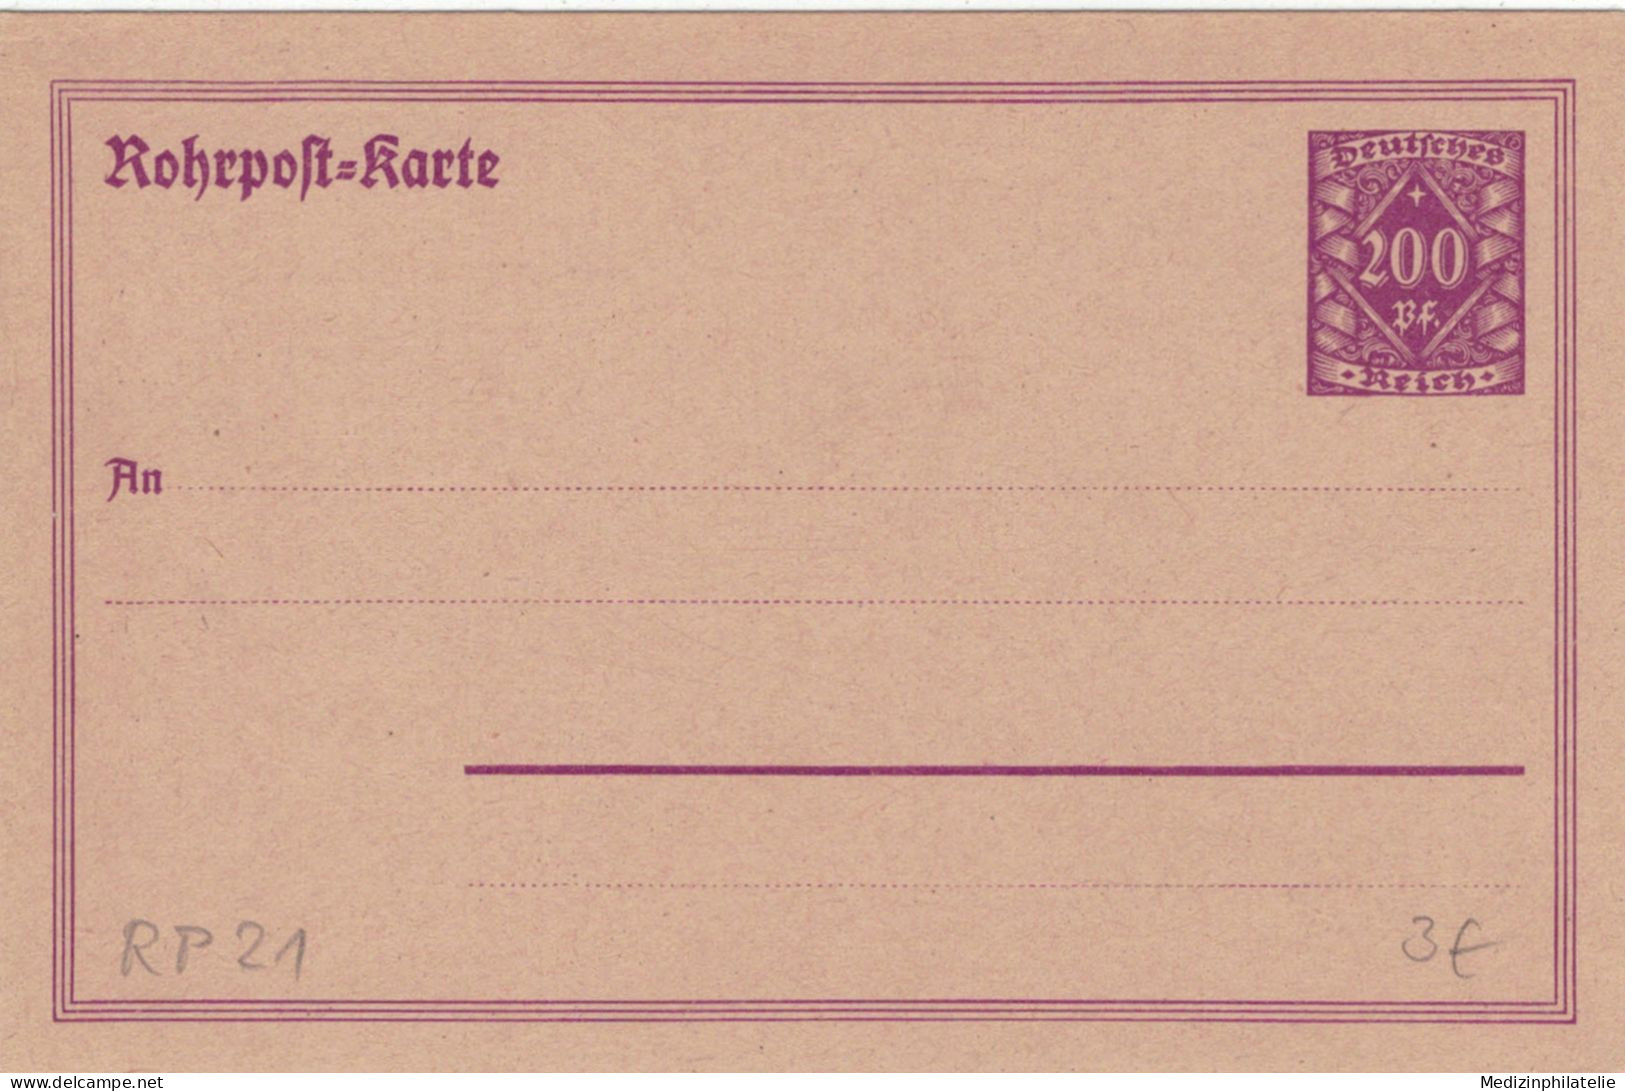 Rohrpost-Karte 200 Pf. Grosse Wertziffer In Raute - Ungebraucht - Tarjetas